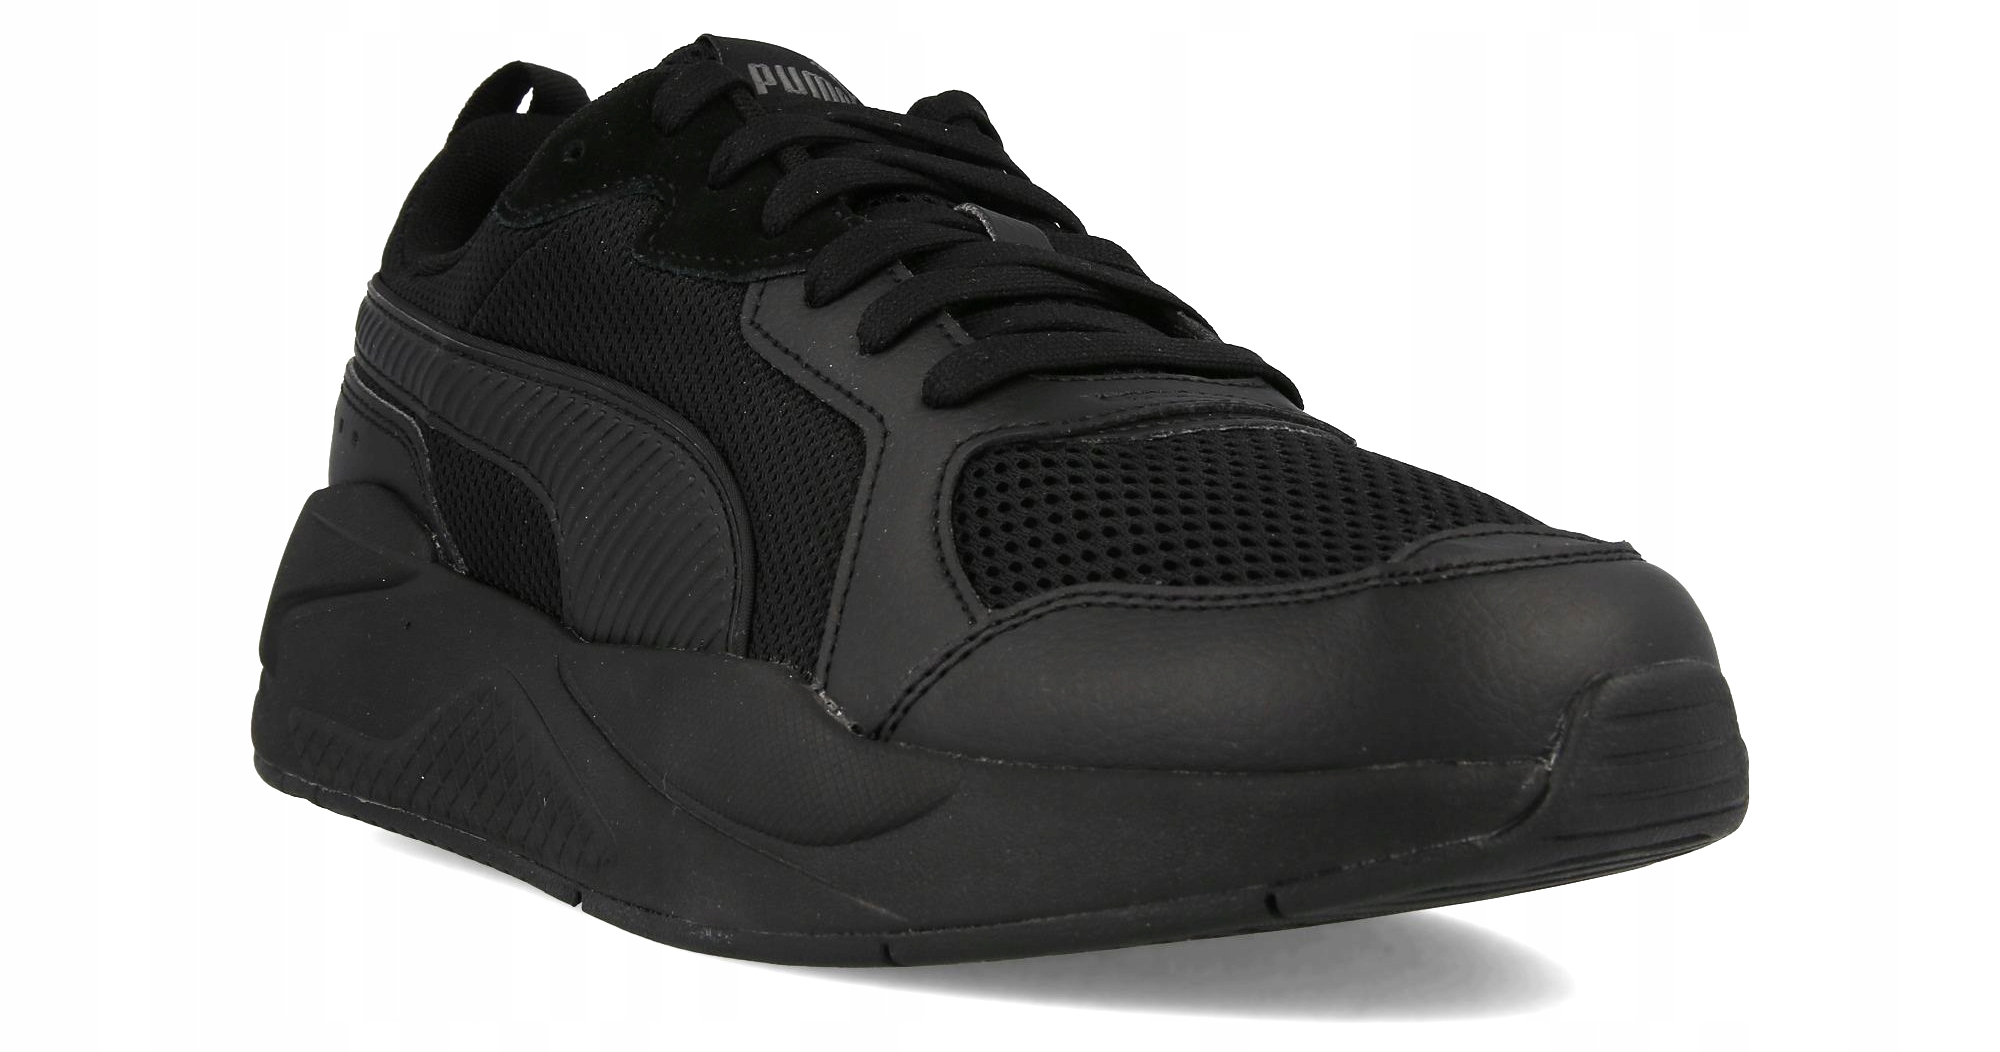 Pánské boty PUMA X-Ray Sportovní černé r.44 za 1261 Kč - Allegro